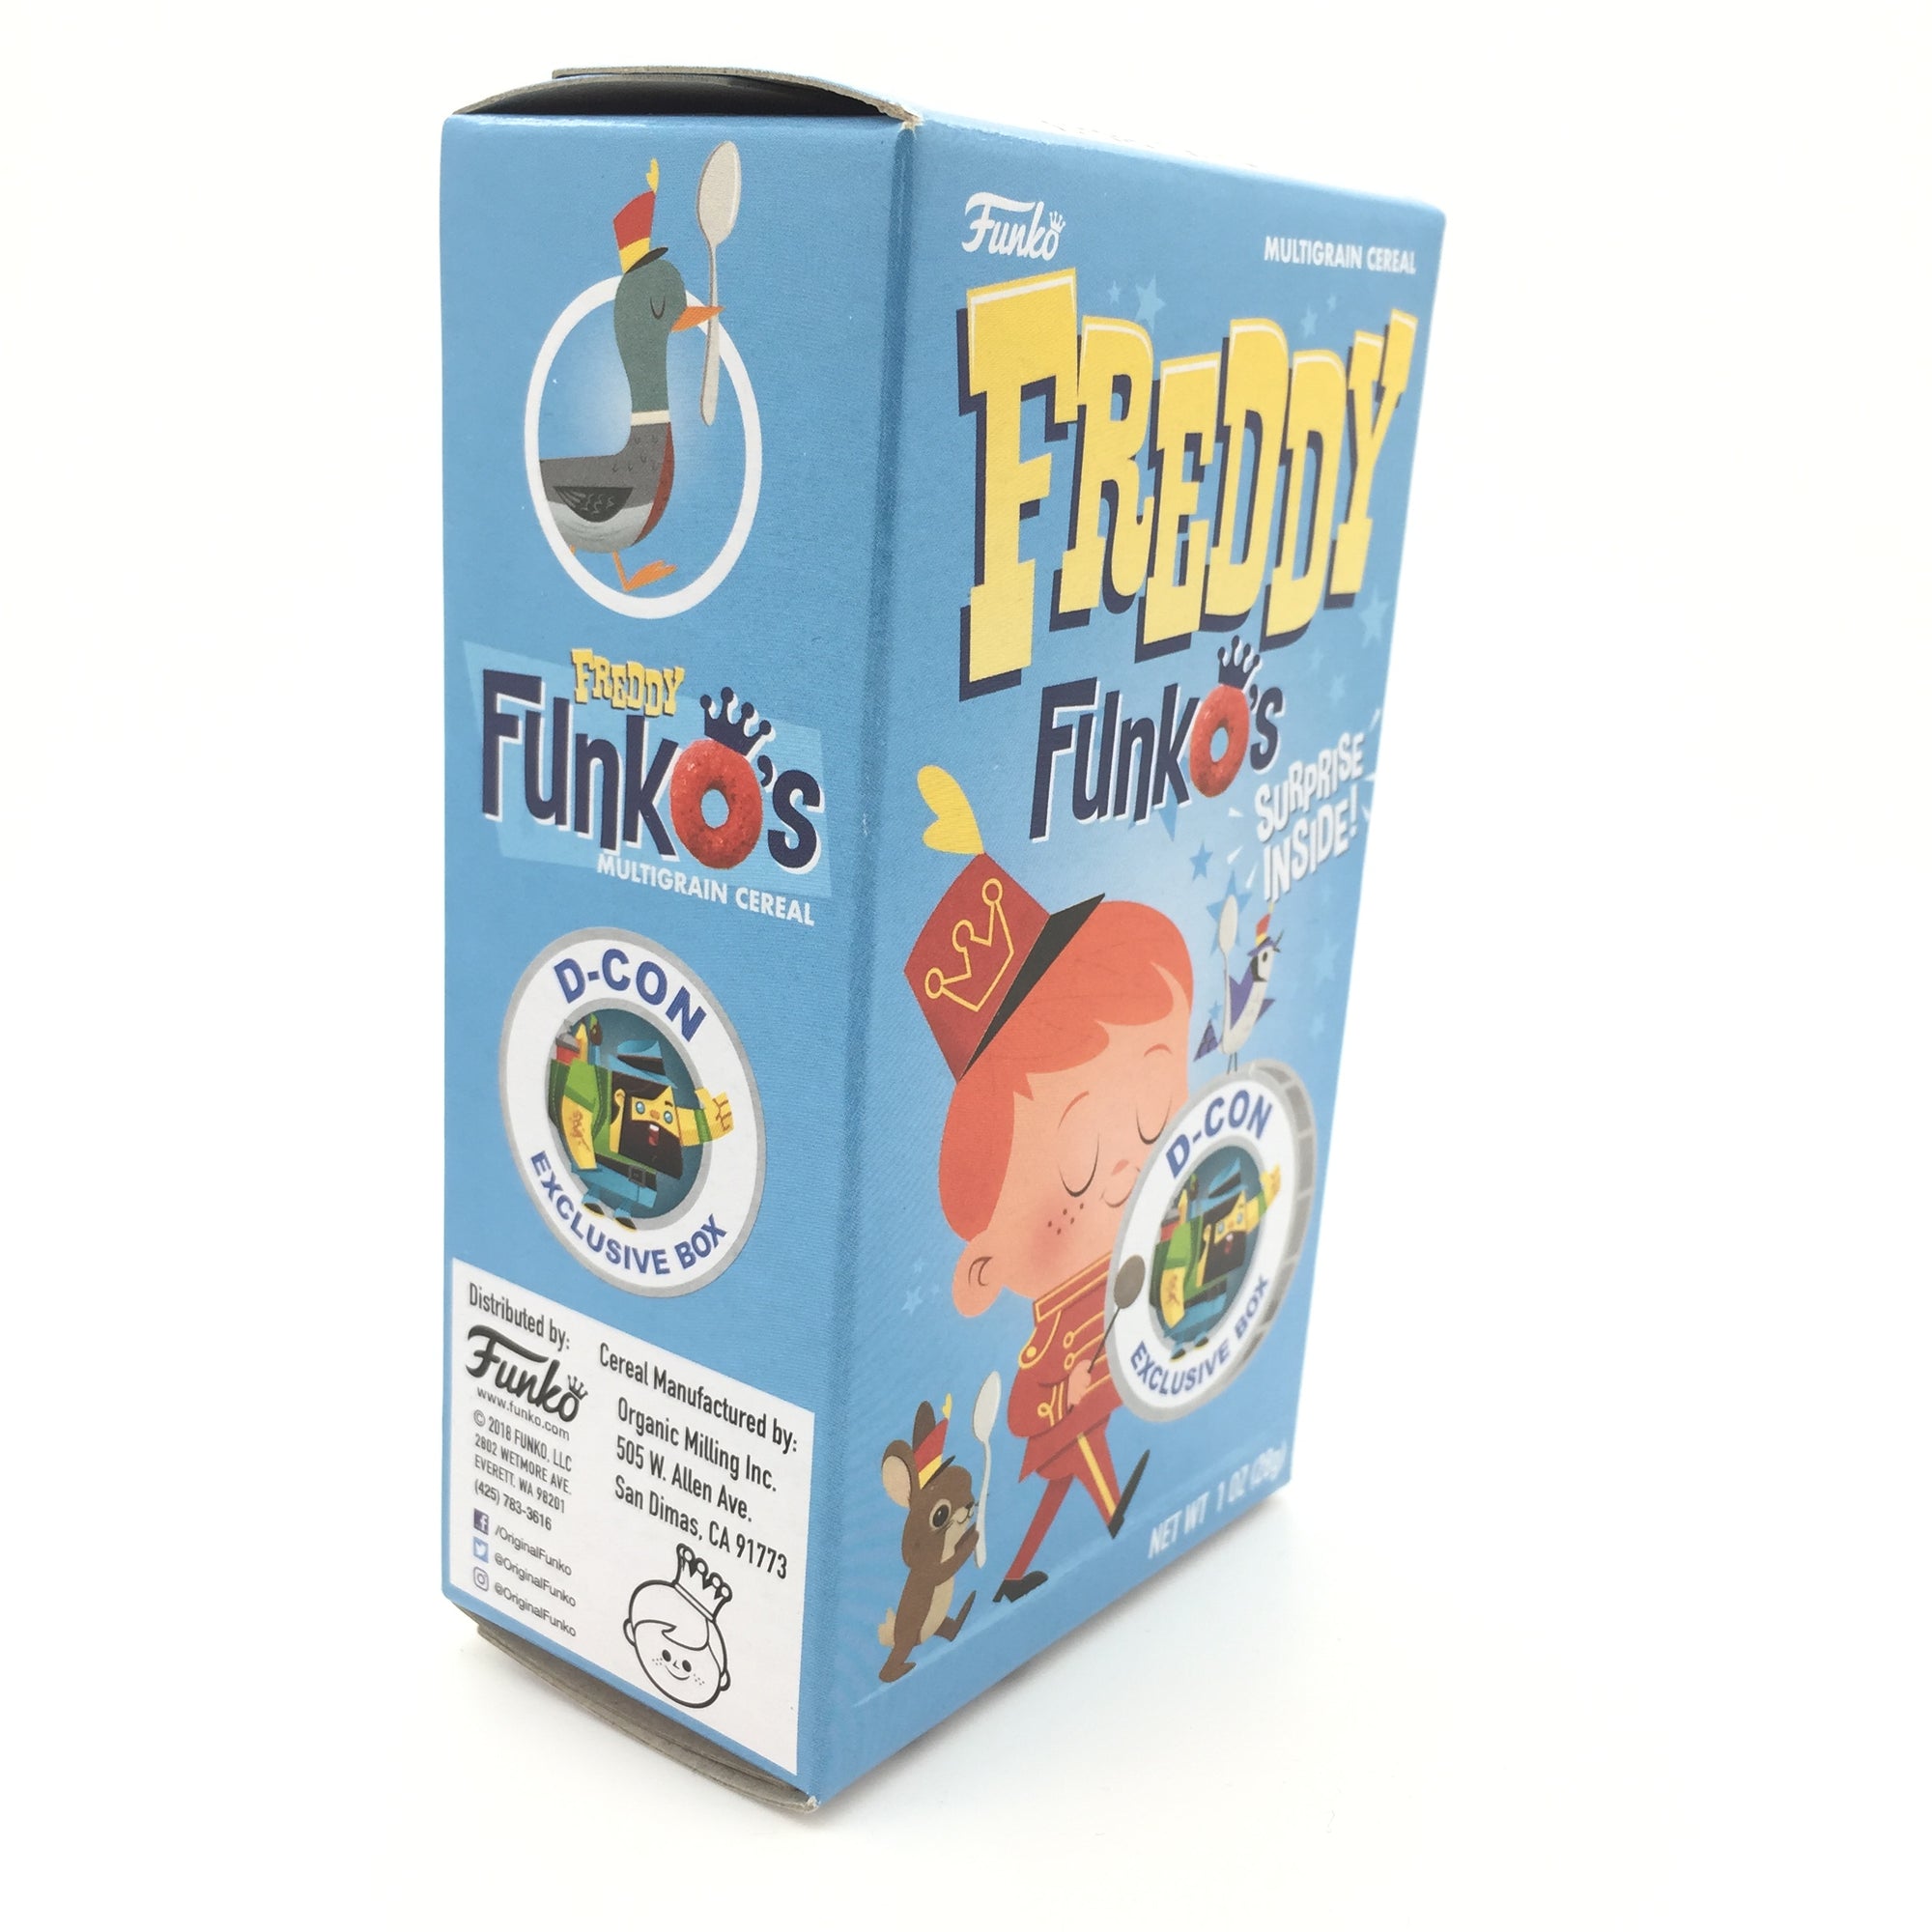 Freddy FunkO's D-CON Exclusive Small Cereal Box with Surprise Sticker